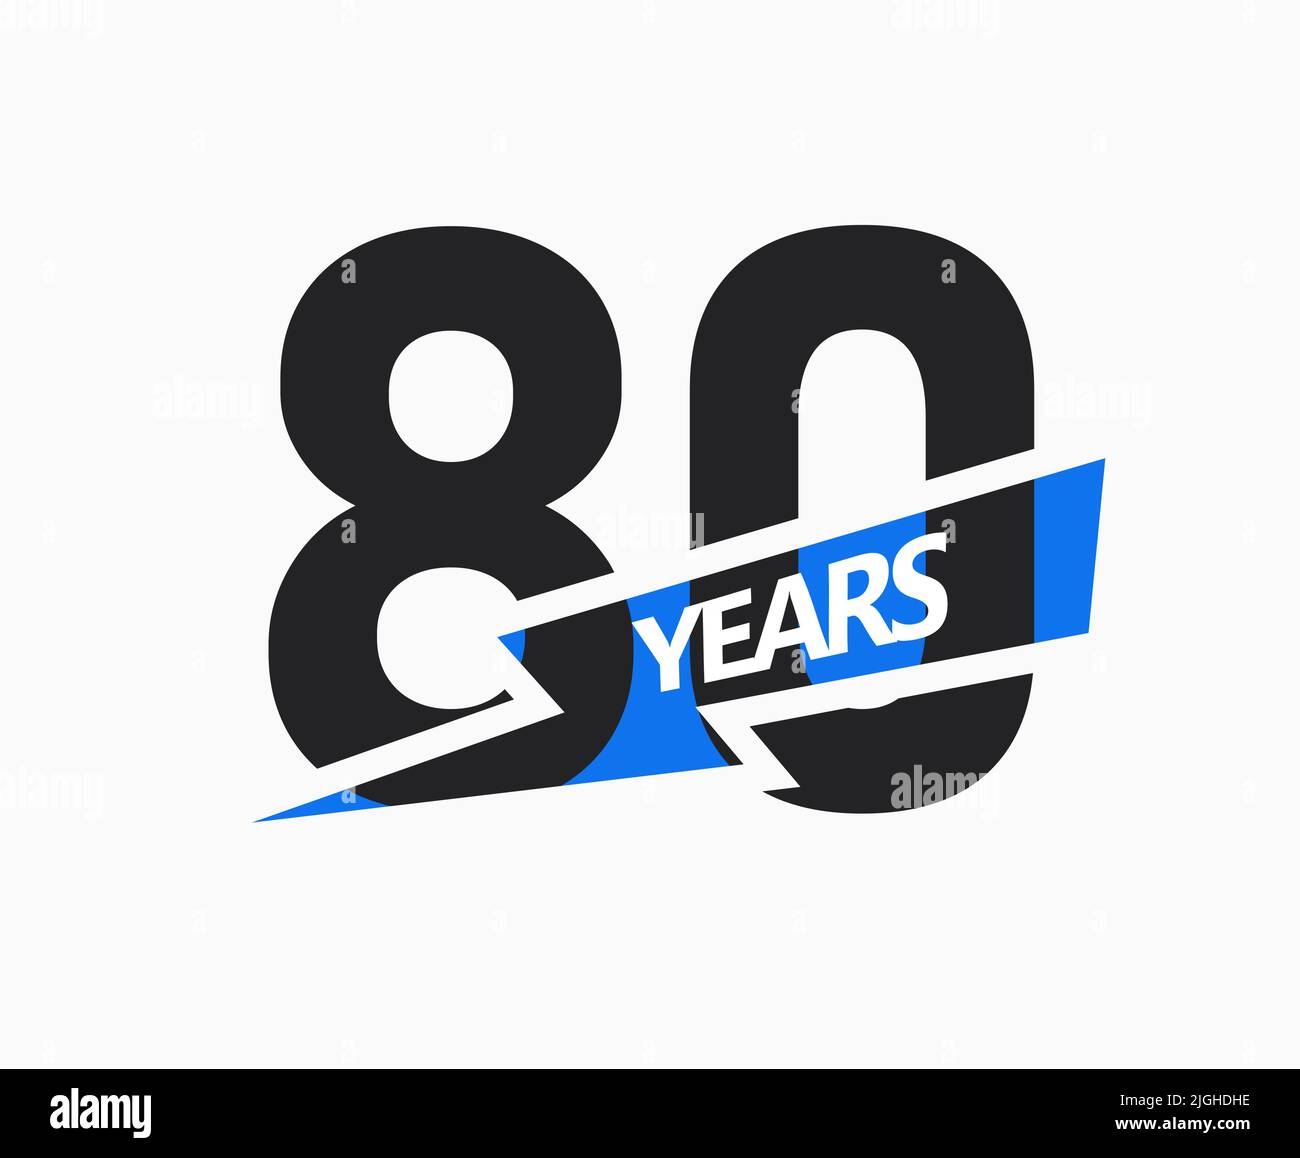 80 ans d'affaires, logo jubilé. 80th signe anniversaire. Motif graphique moderne pour l'anniversaire de l'entreprise. Illustration vectorielle isolée. Illustration de Vecteur